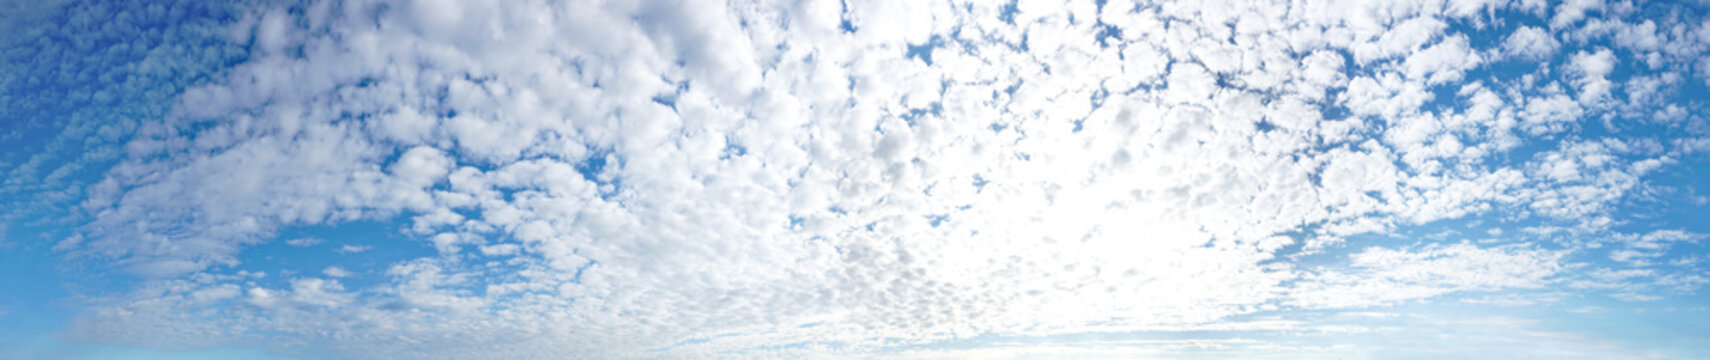 Wolkenhimmel Panorama am Morgen - Schäfchenwolken kündigen schlechtes Wetter an, Wetterfühligkeit